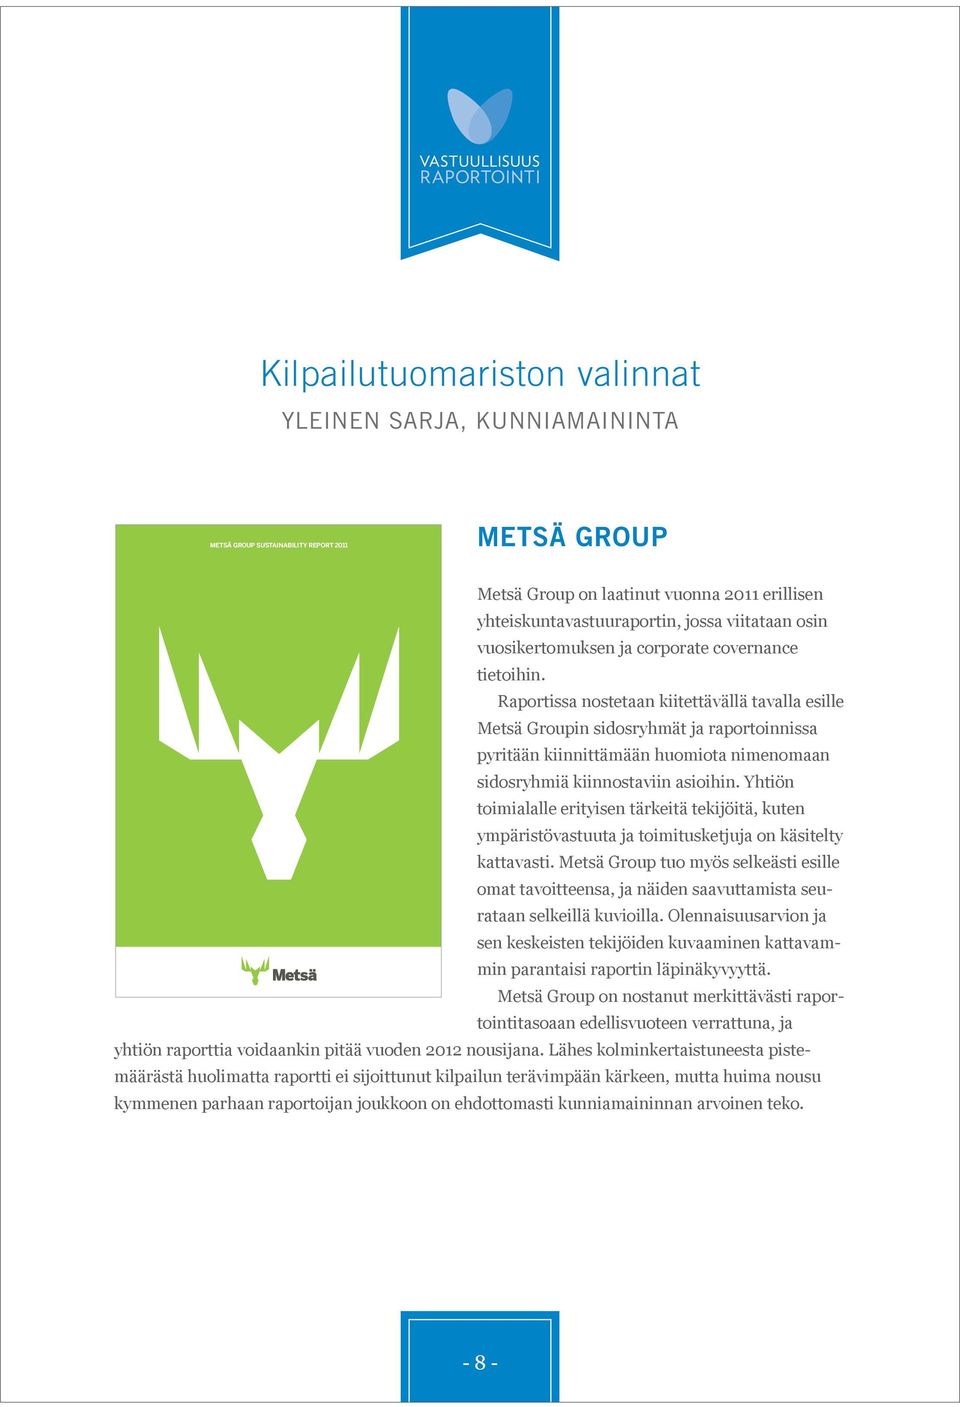 Raportissa nostetaan kiitettävällä tavalla esille Metsä Groupin sidosryhmät ja raportoinnissa pyritään kiinnittämään huomiota nimenomaan sidosryhmiä kiinnostaviin asioihin.